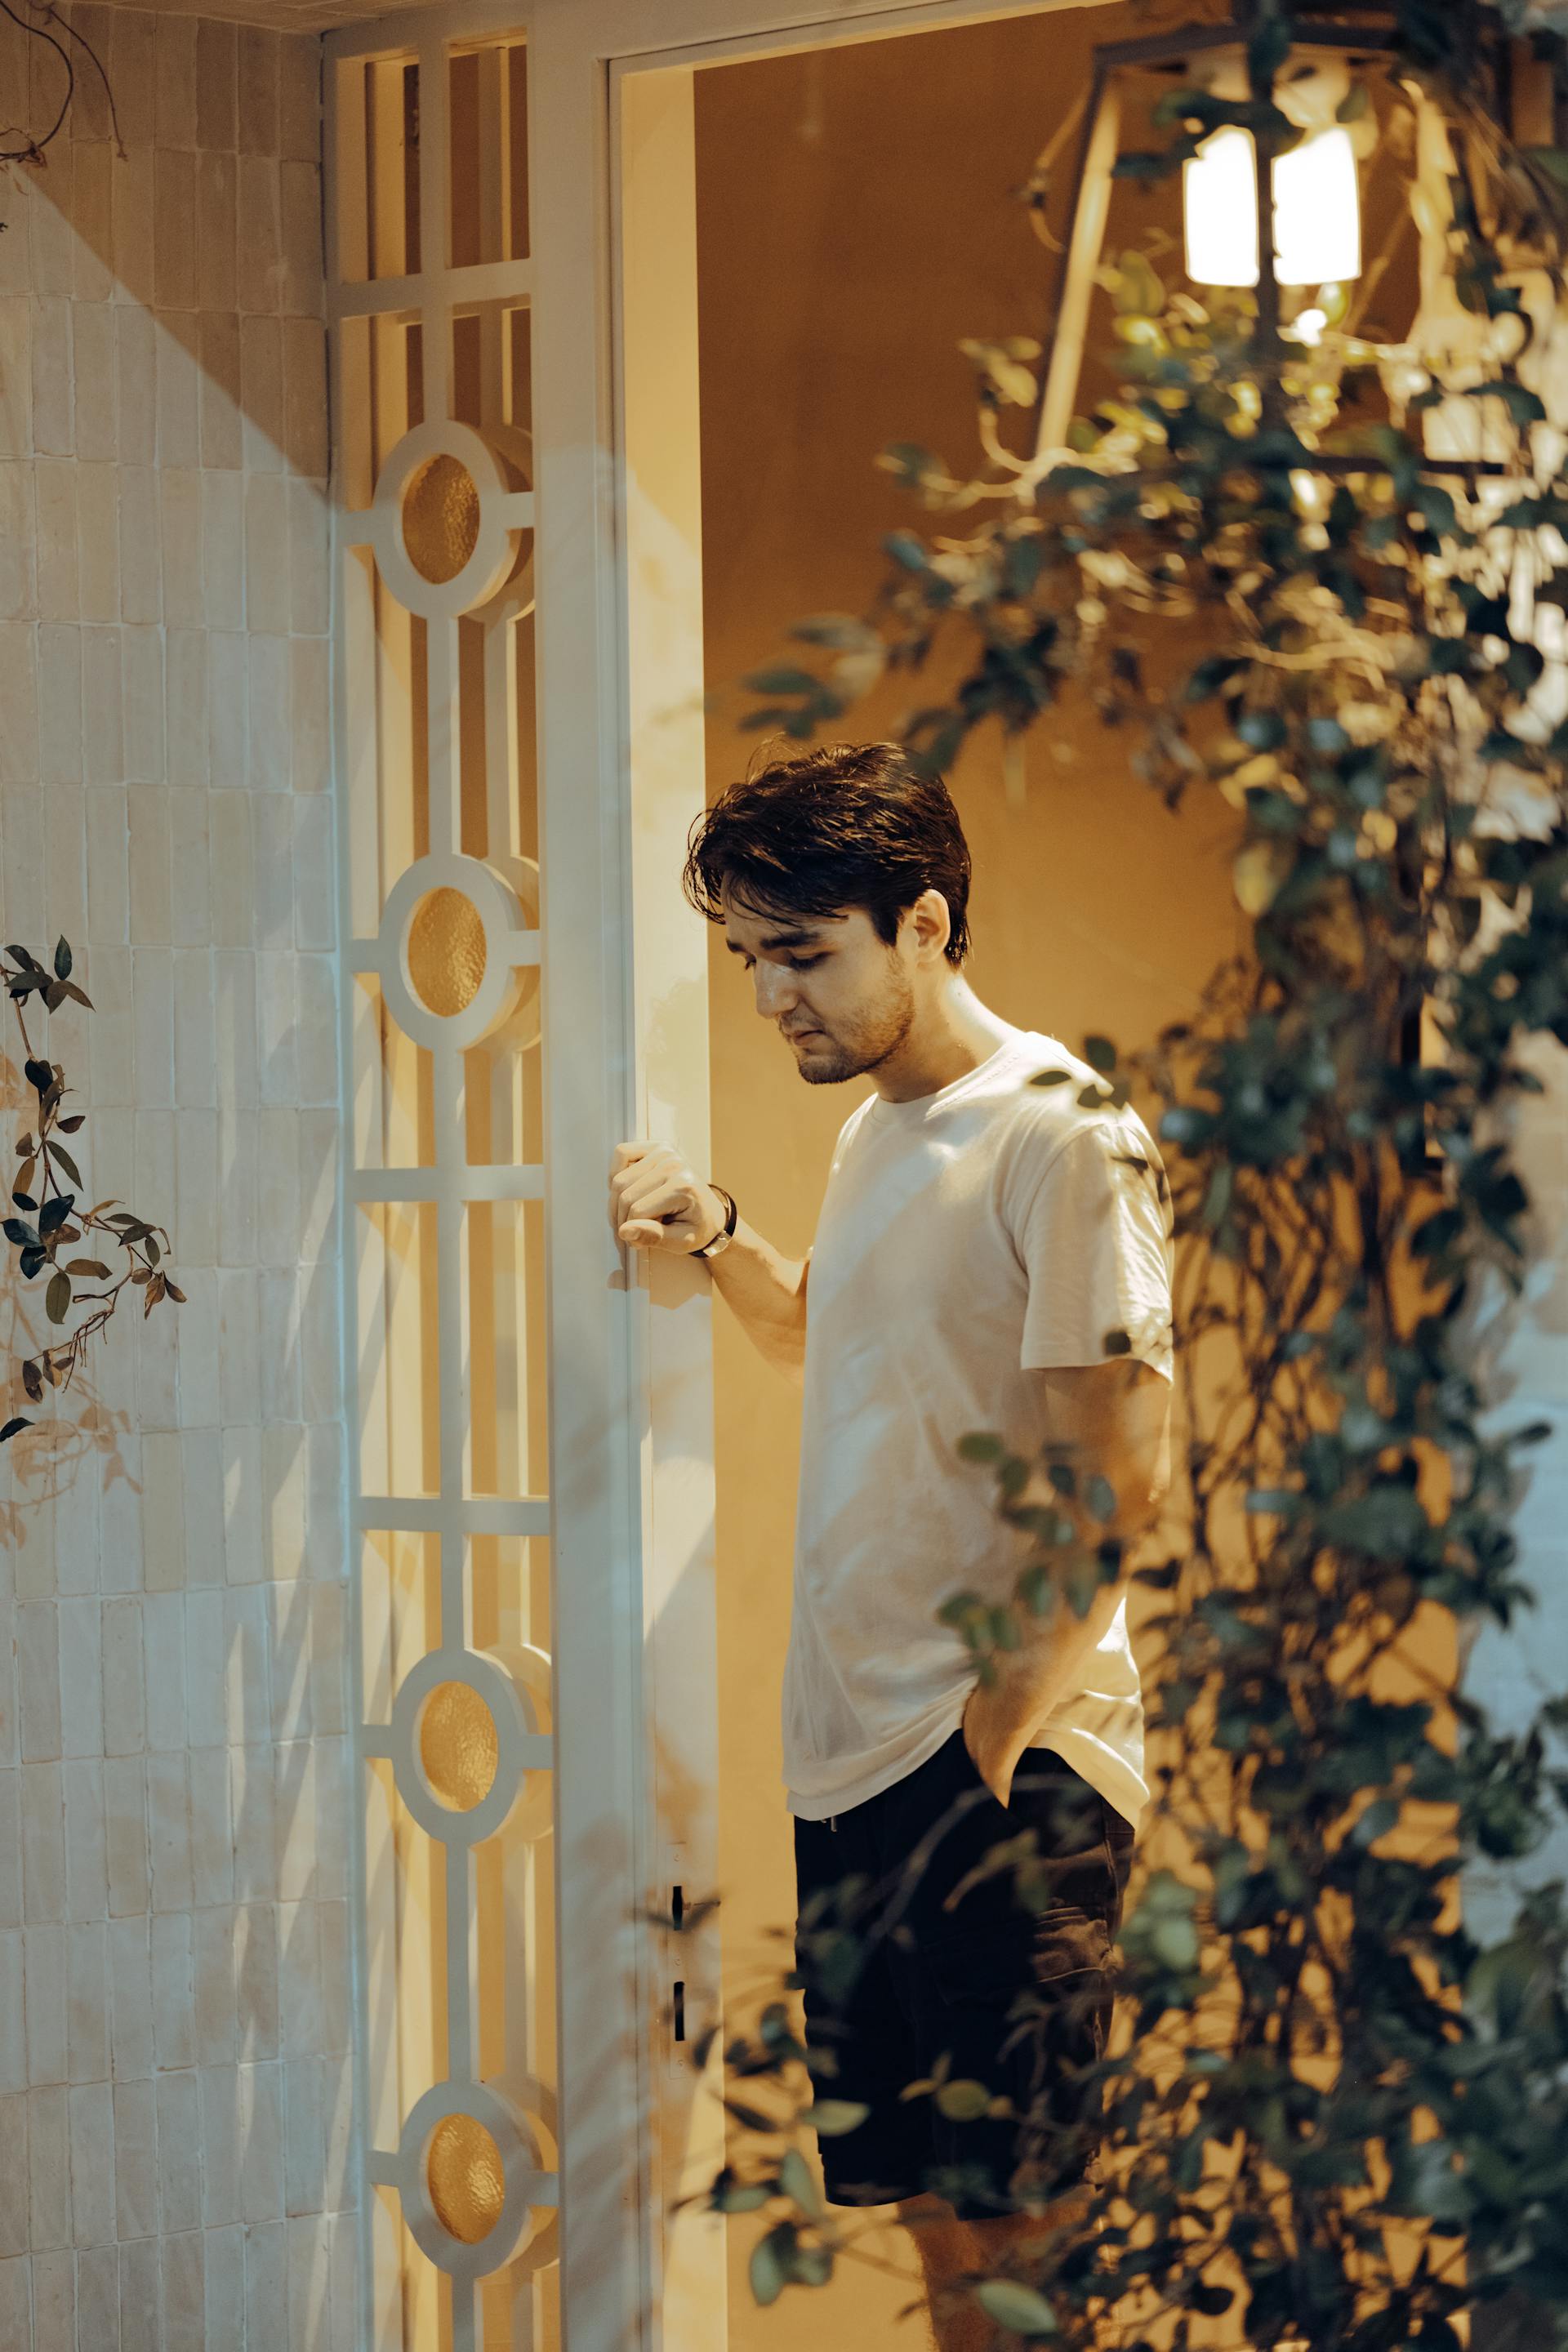 Un homme debout dans l'embrasure de la porte | Source : Pexels